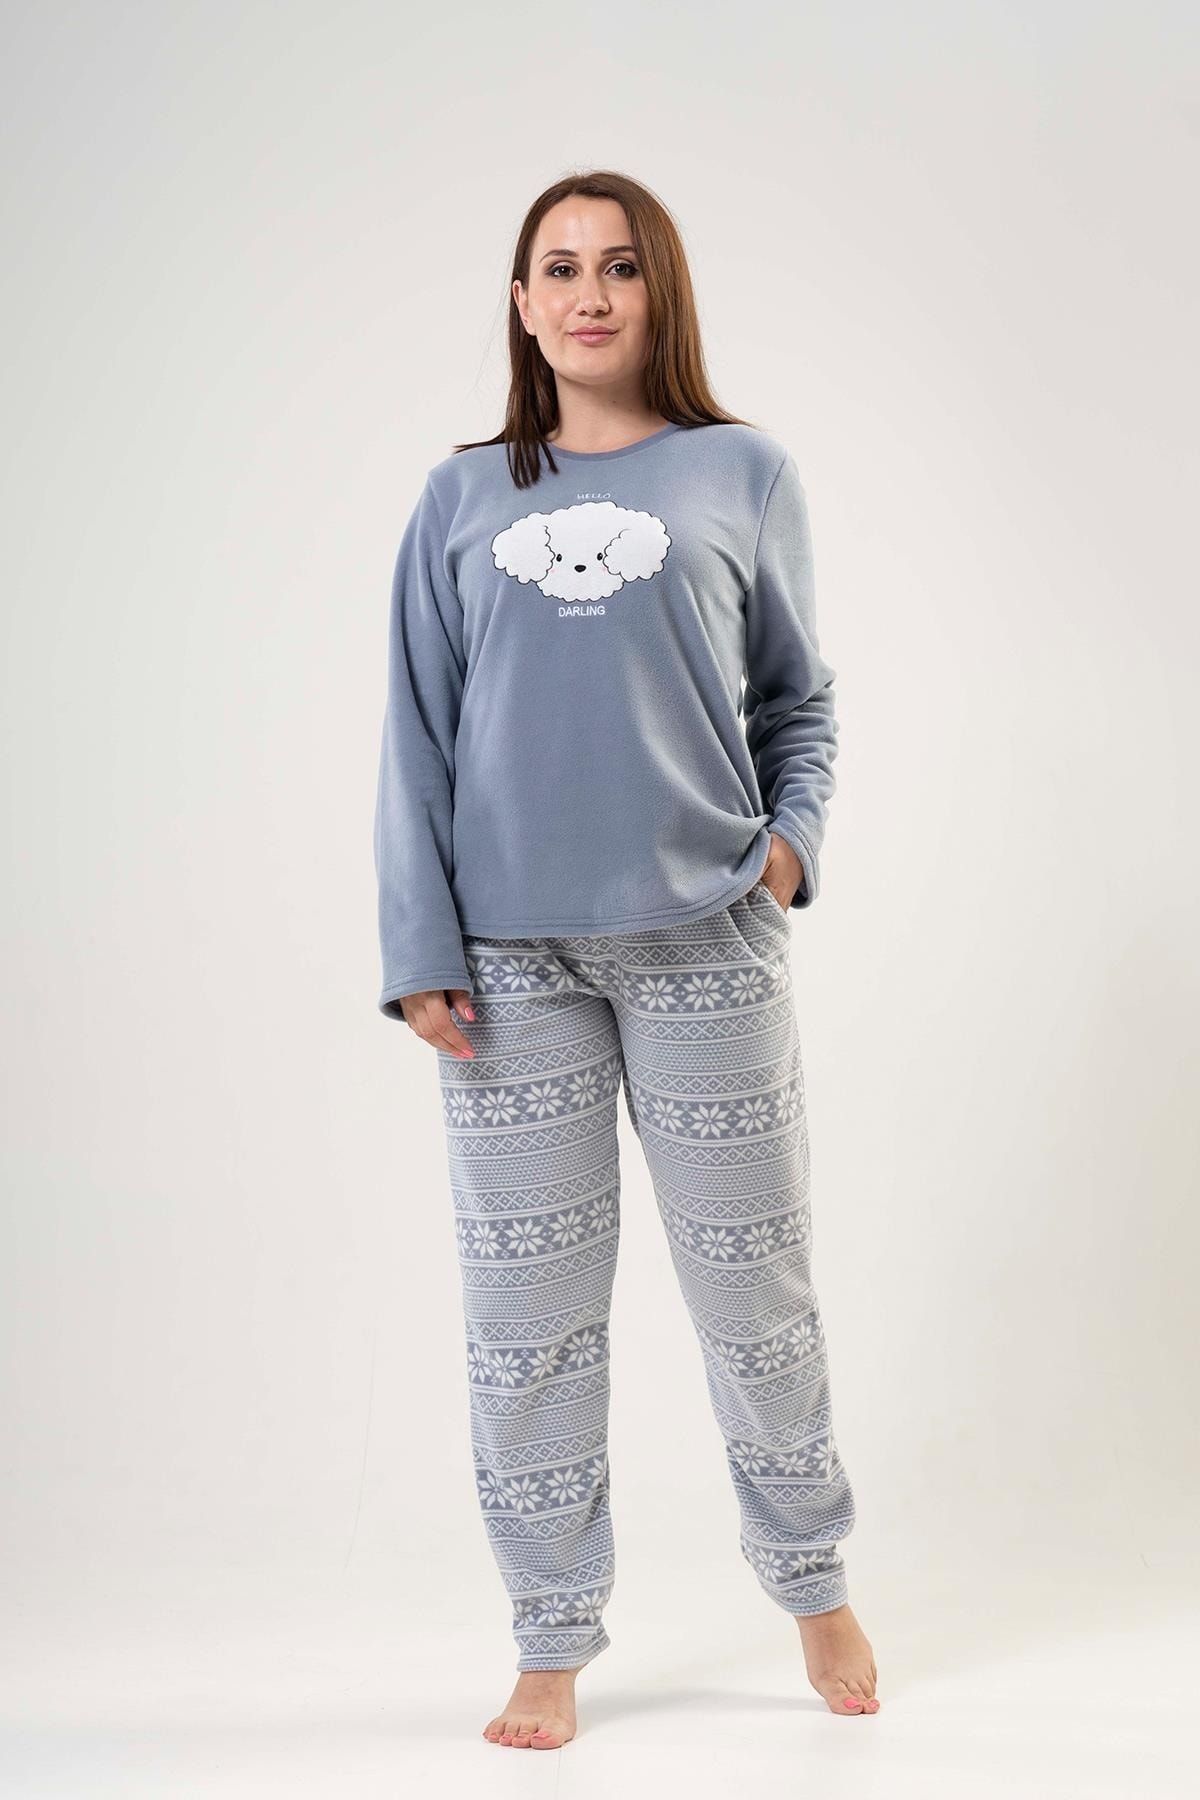 Vienetta Kadın Büyük Beden Gri Polar Pijama Takımı 203064-3972